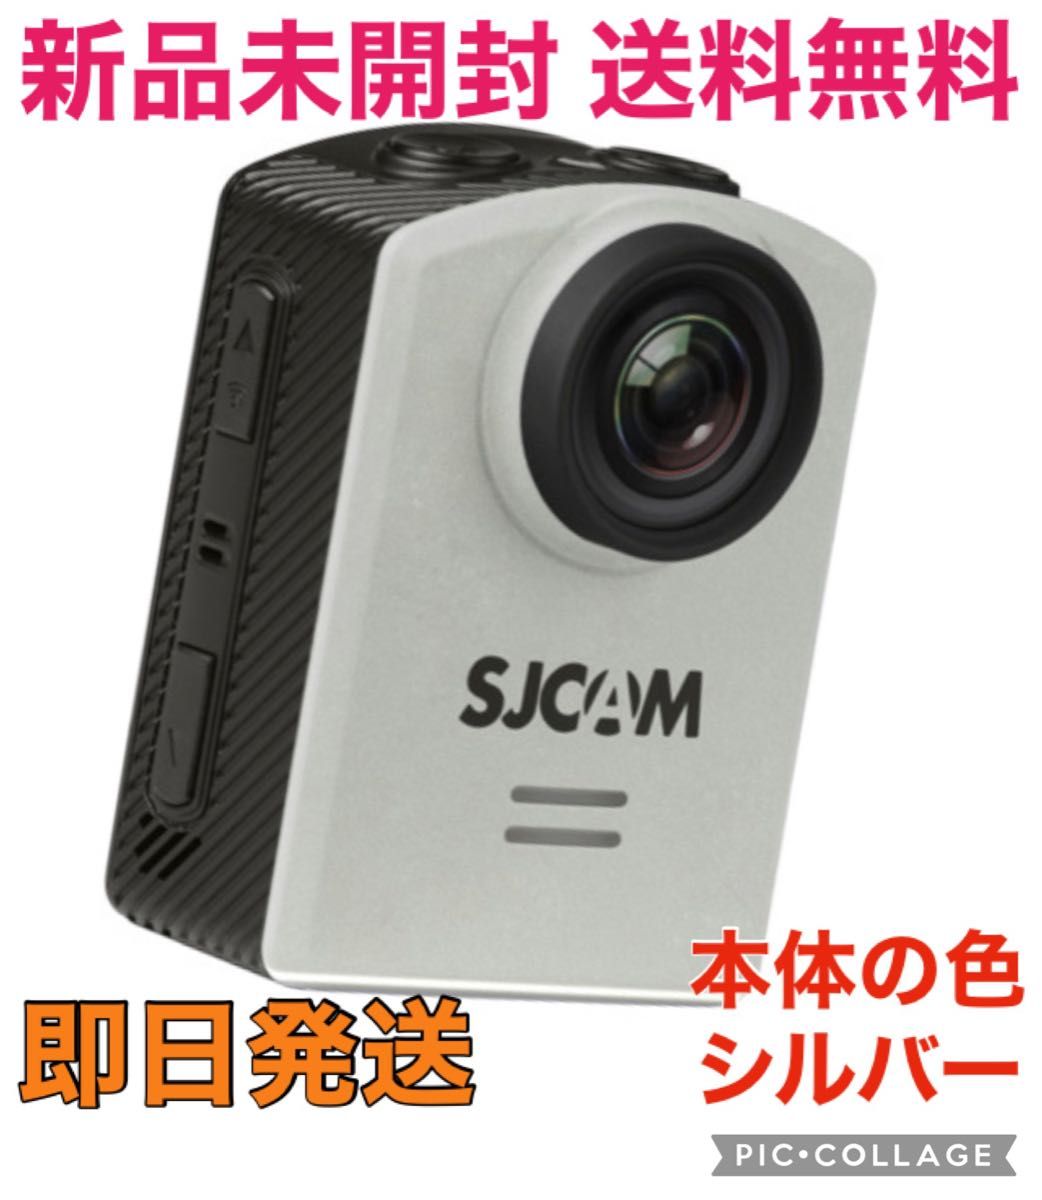 ★新品未開封 送料無料★ SJCAM M20 アクションカメラ 4K 防水 ドローン撮影